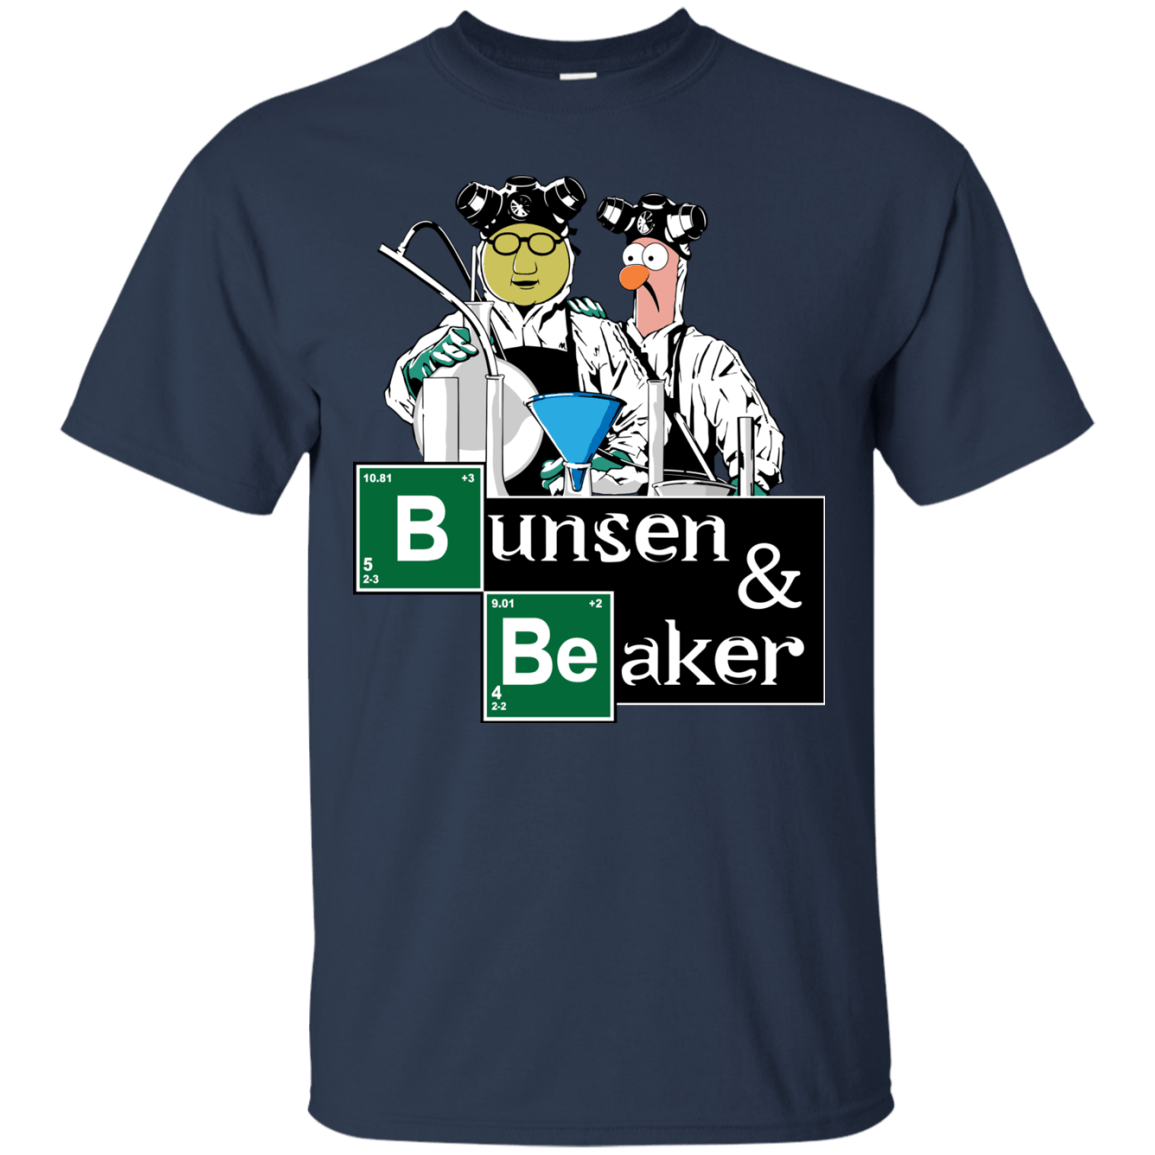 T-Shirts Navy / Small Bunsen & Beaker T-Shirt